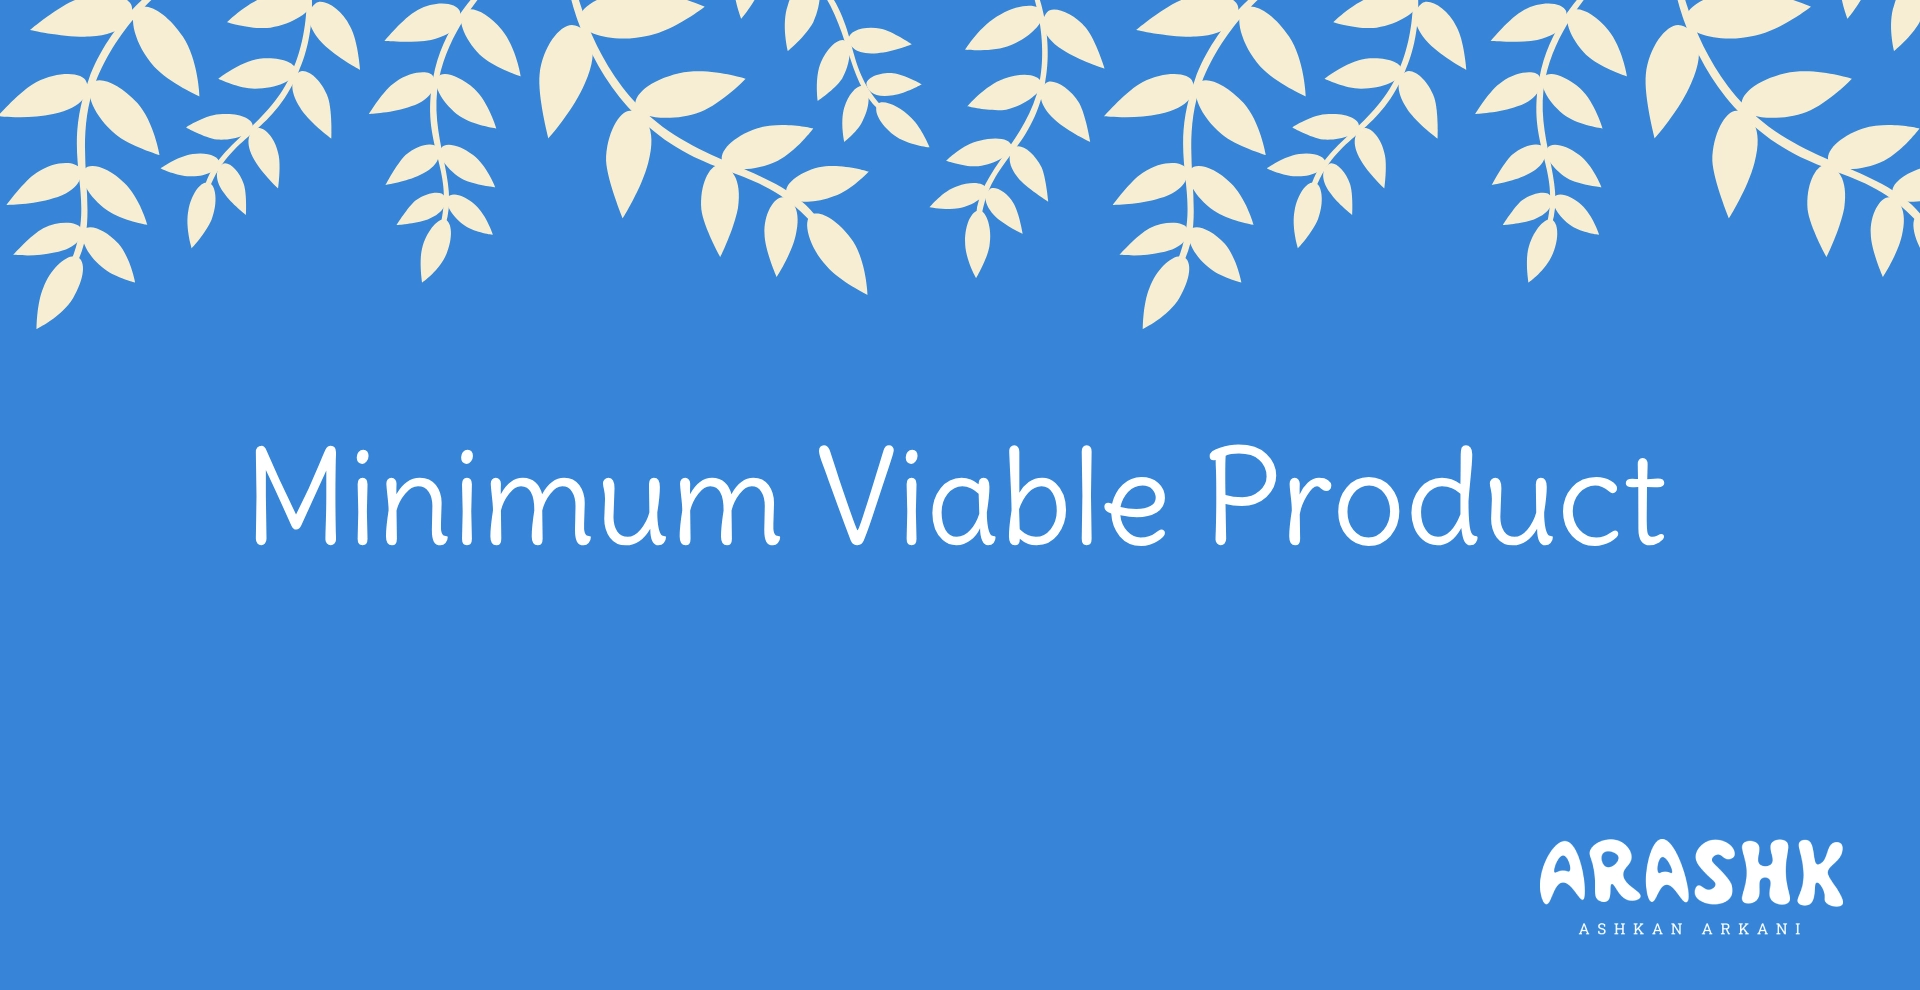 Minimum Viable Product